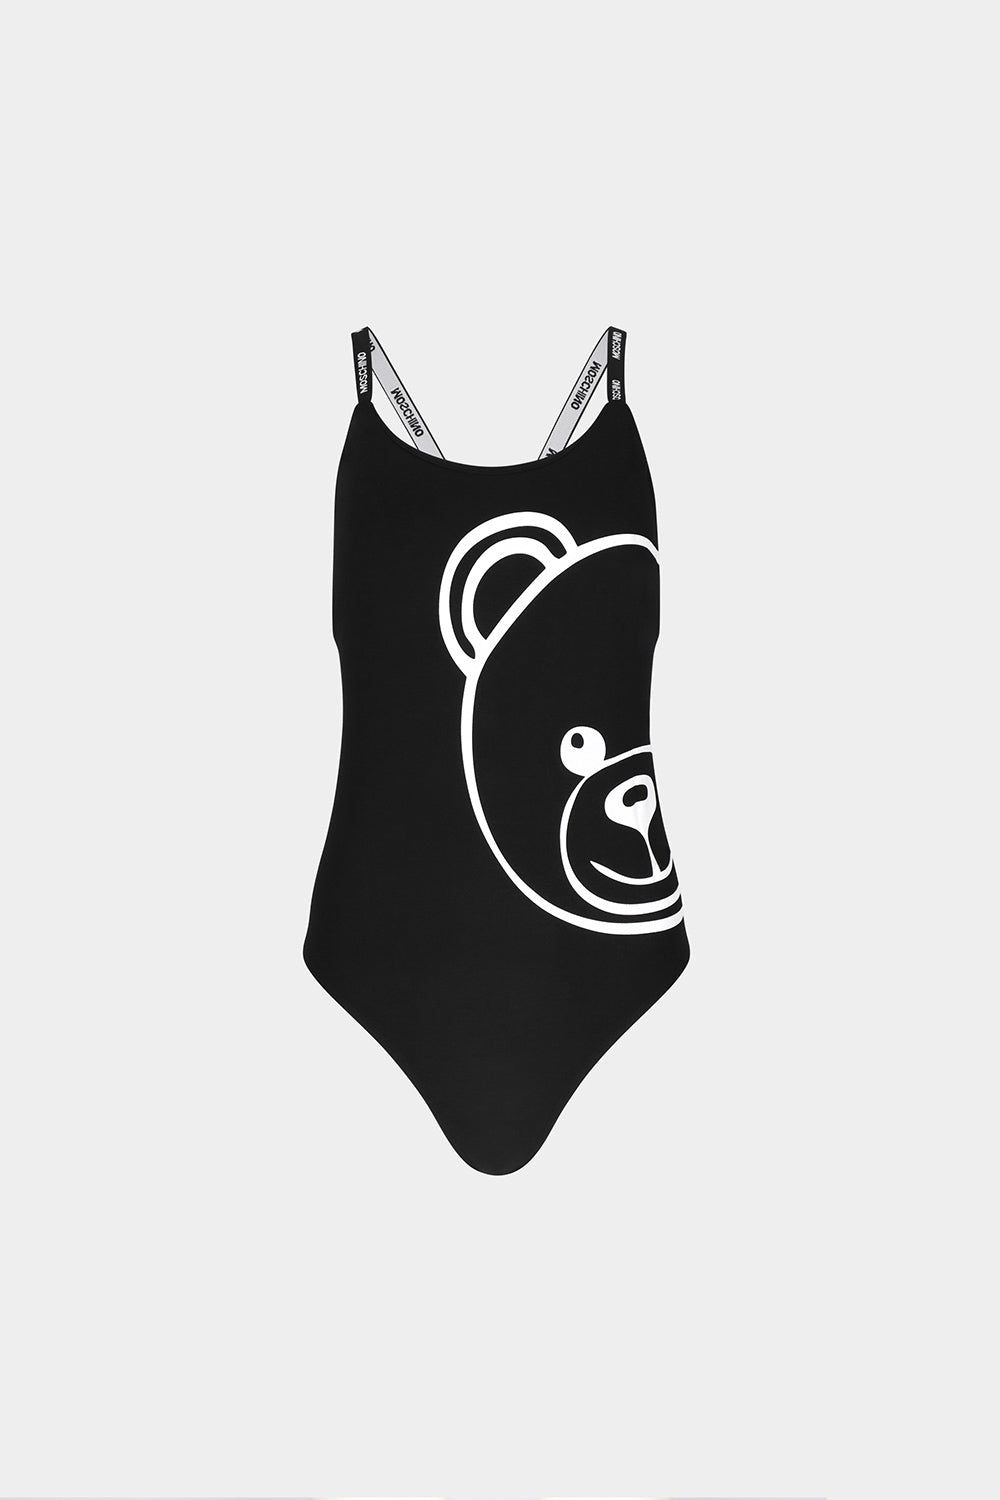 בגד גוף לנשים הדפס דובי MOSCHINO MOSCHINO Vendome online | ונדום .